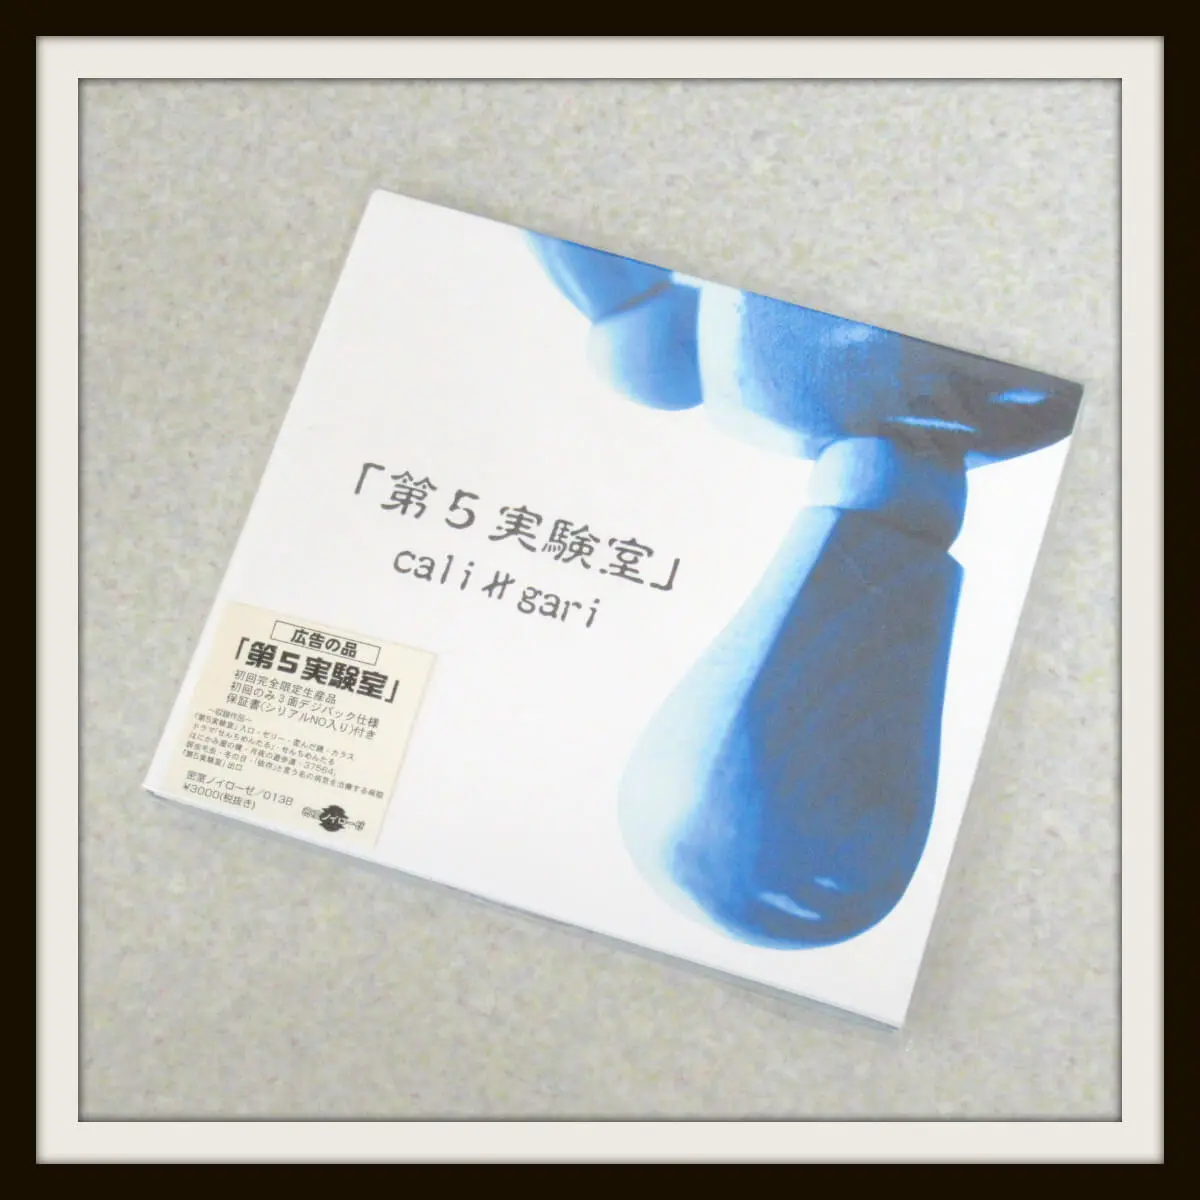 cali≠gari 第5実験室 初回CD